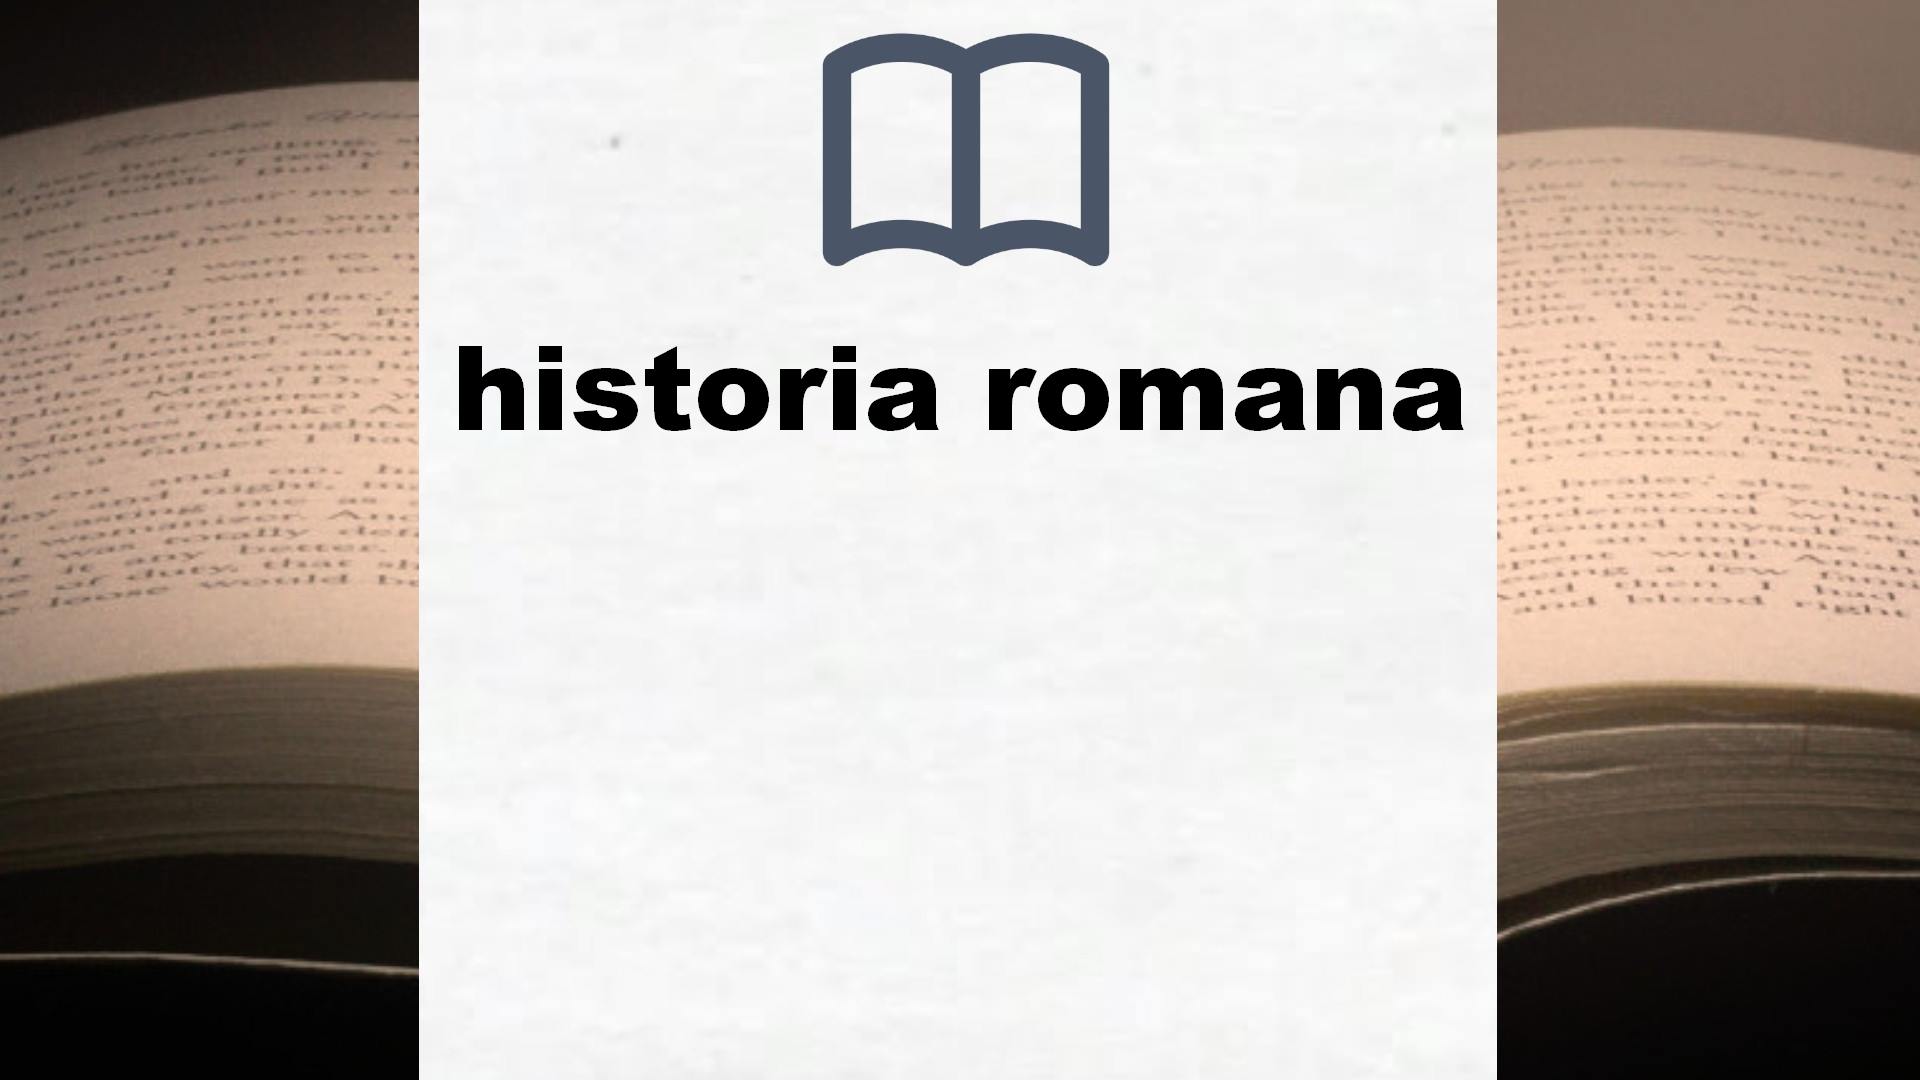 Libros sobre historia romana